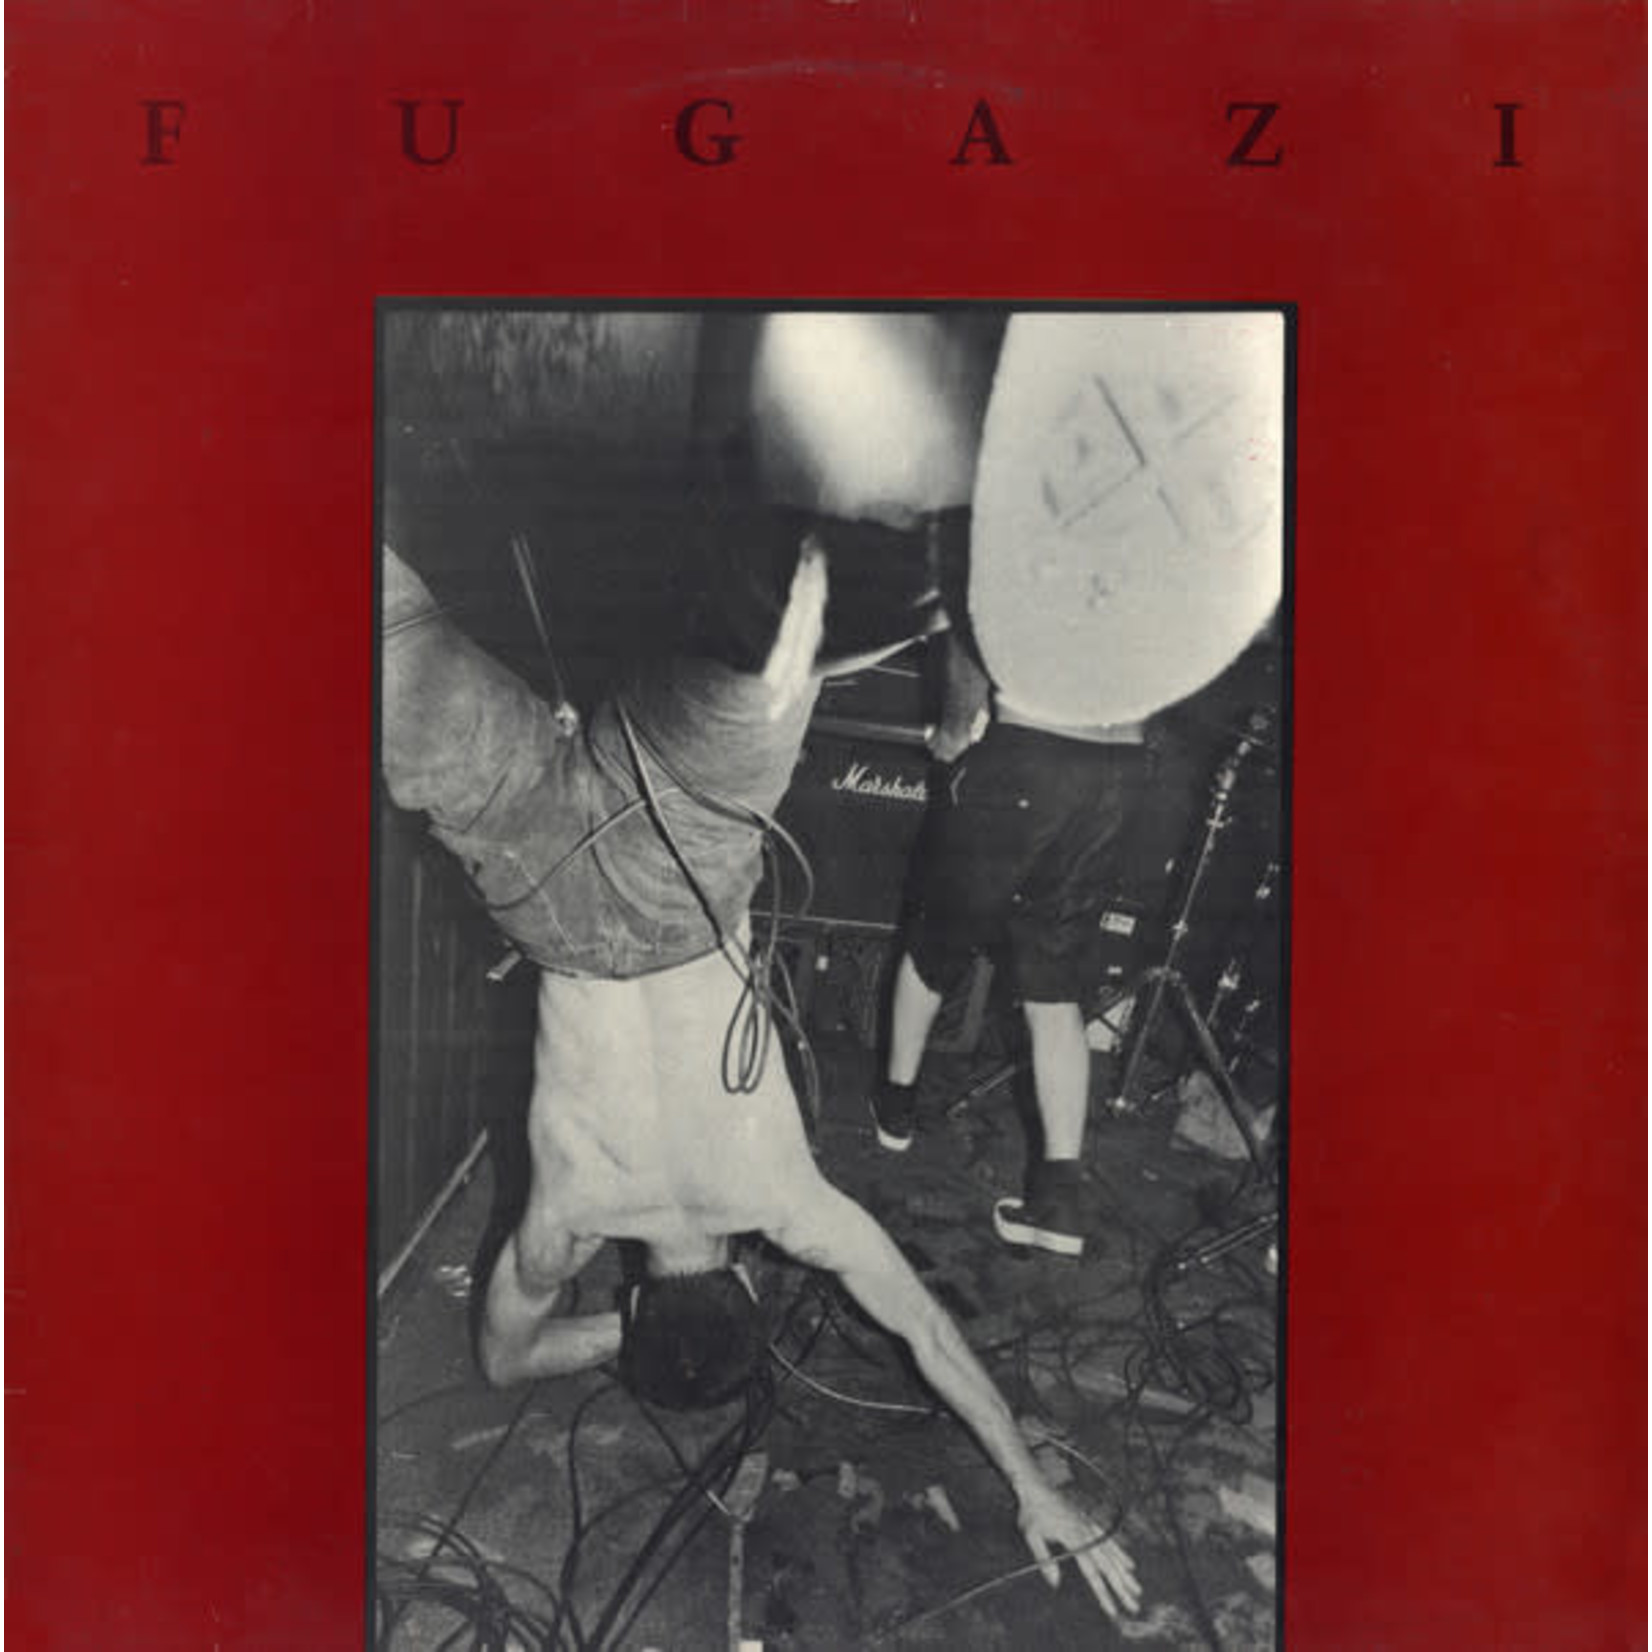 [New] Fugazi - Fugazi (12"EP)